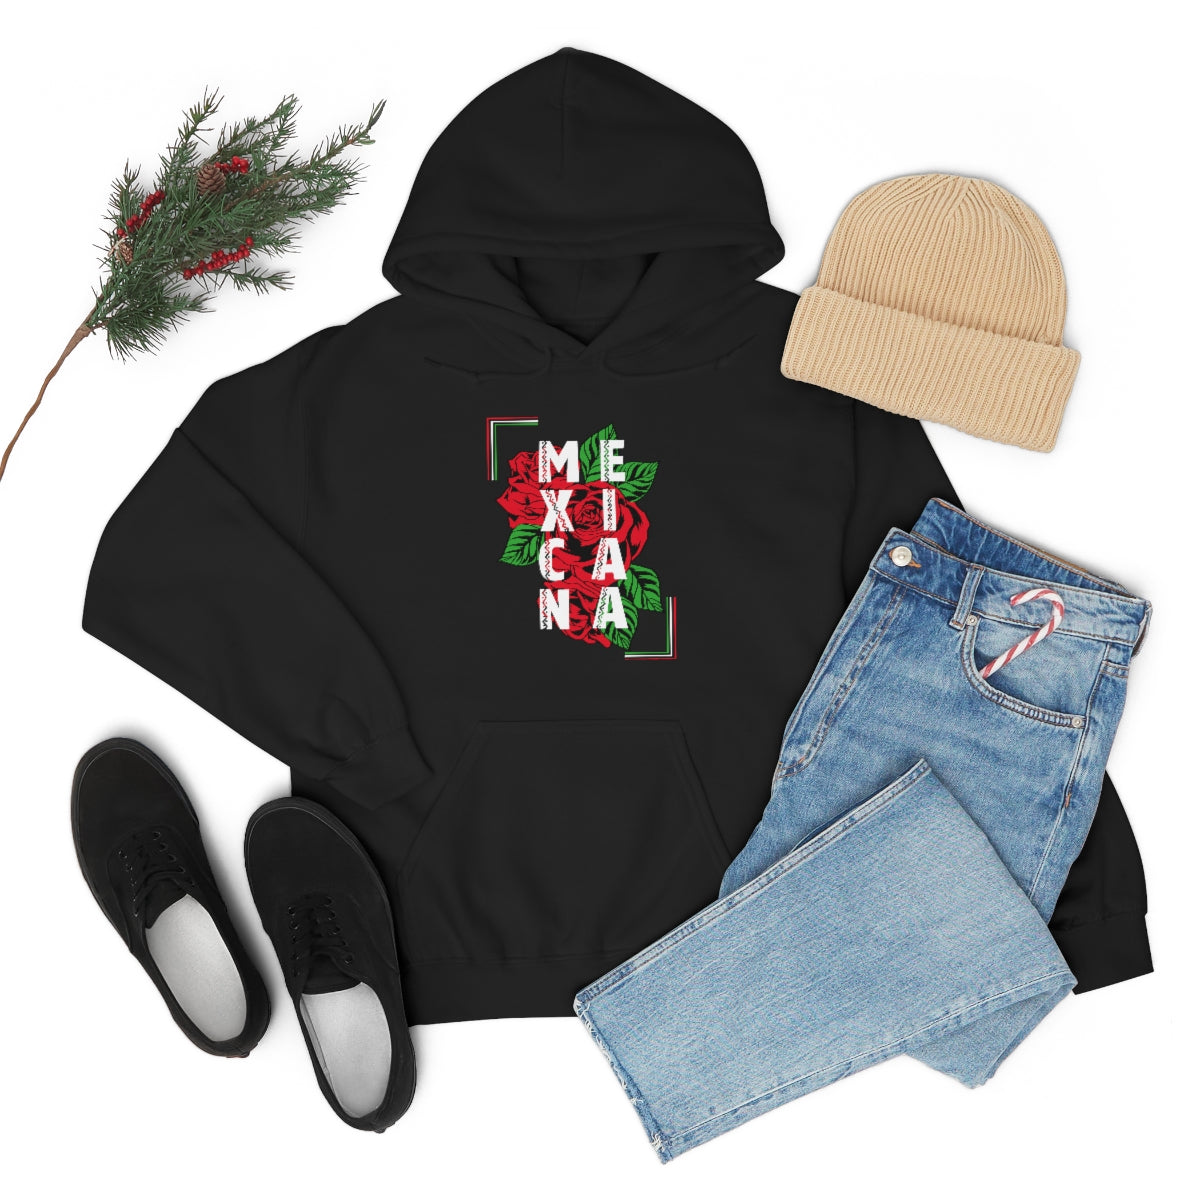 Mexicana Hooded Sweatshirt